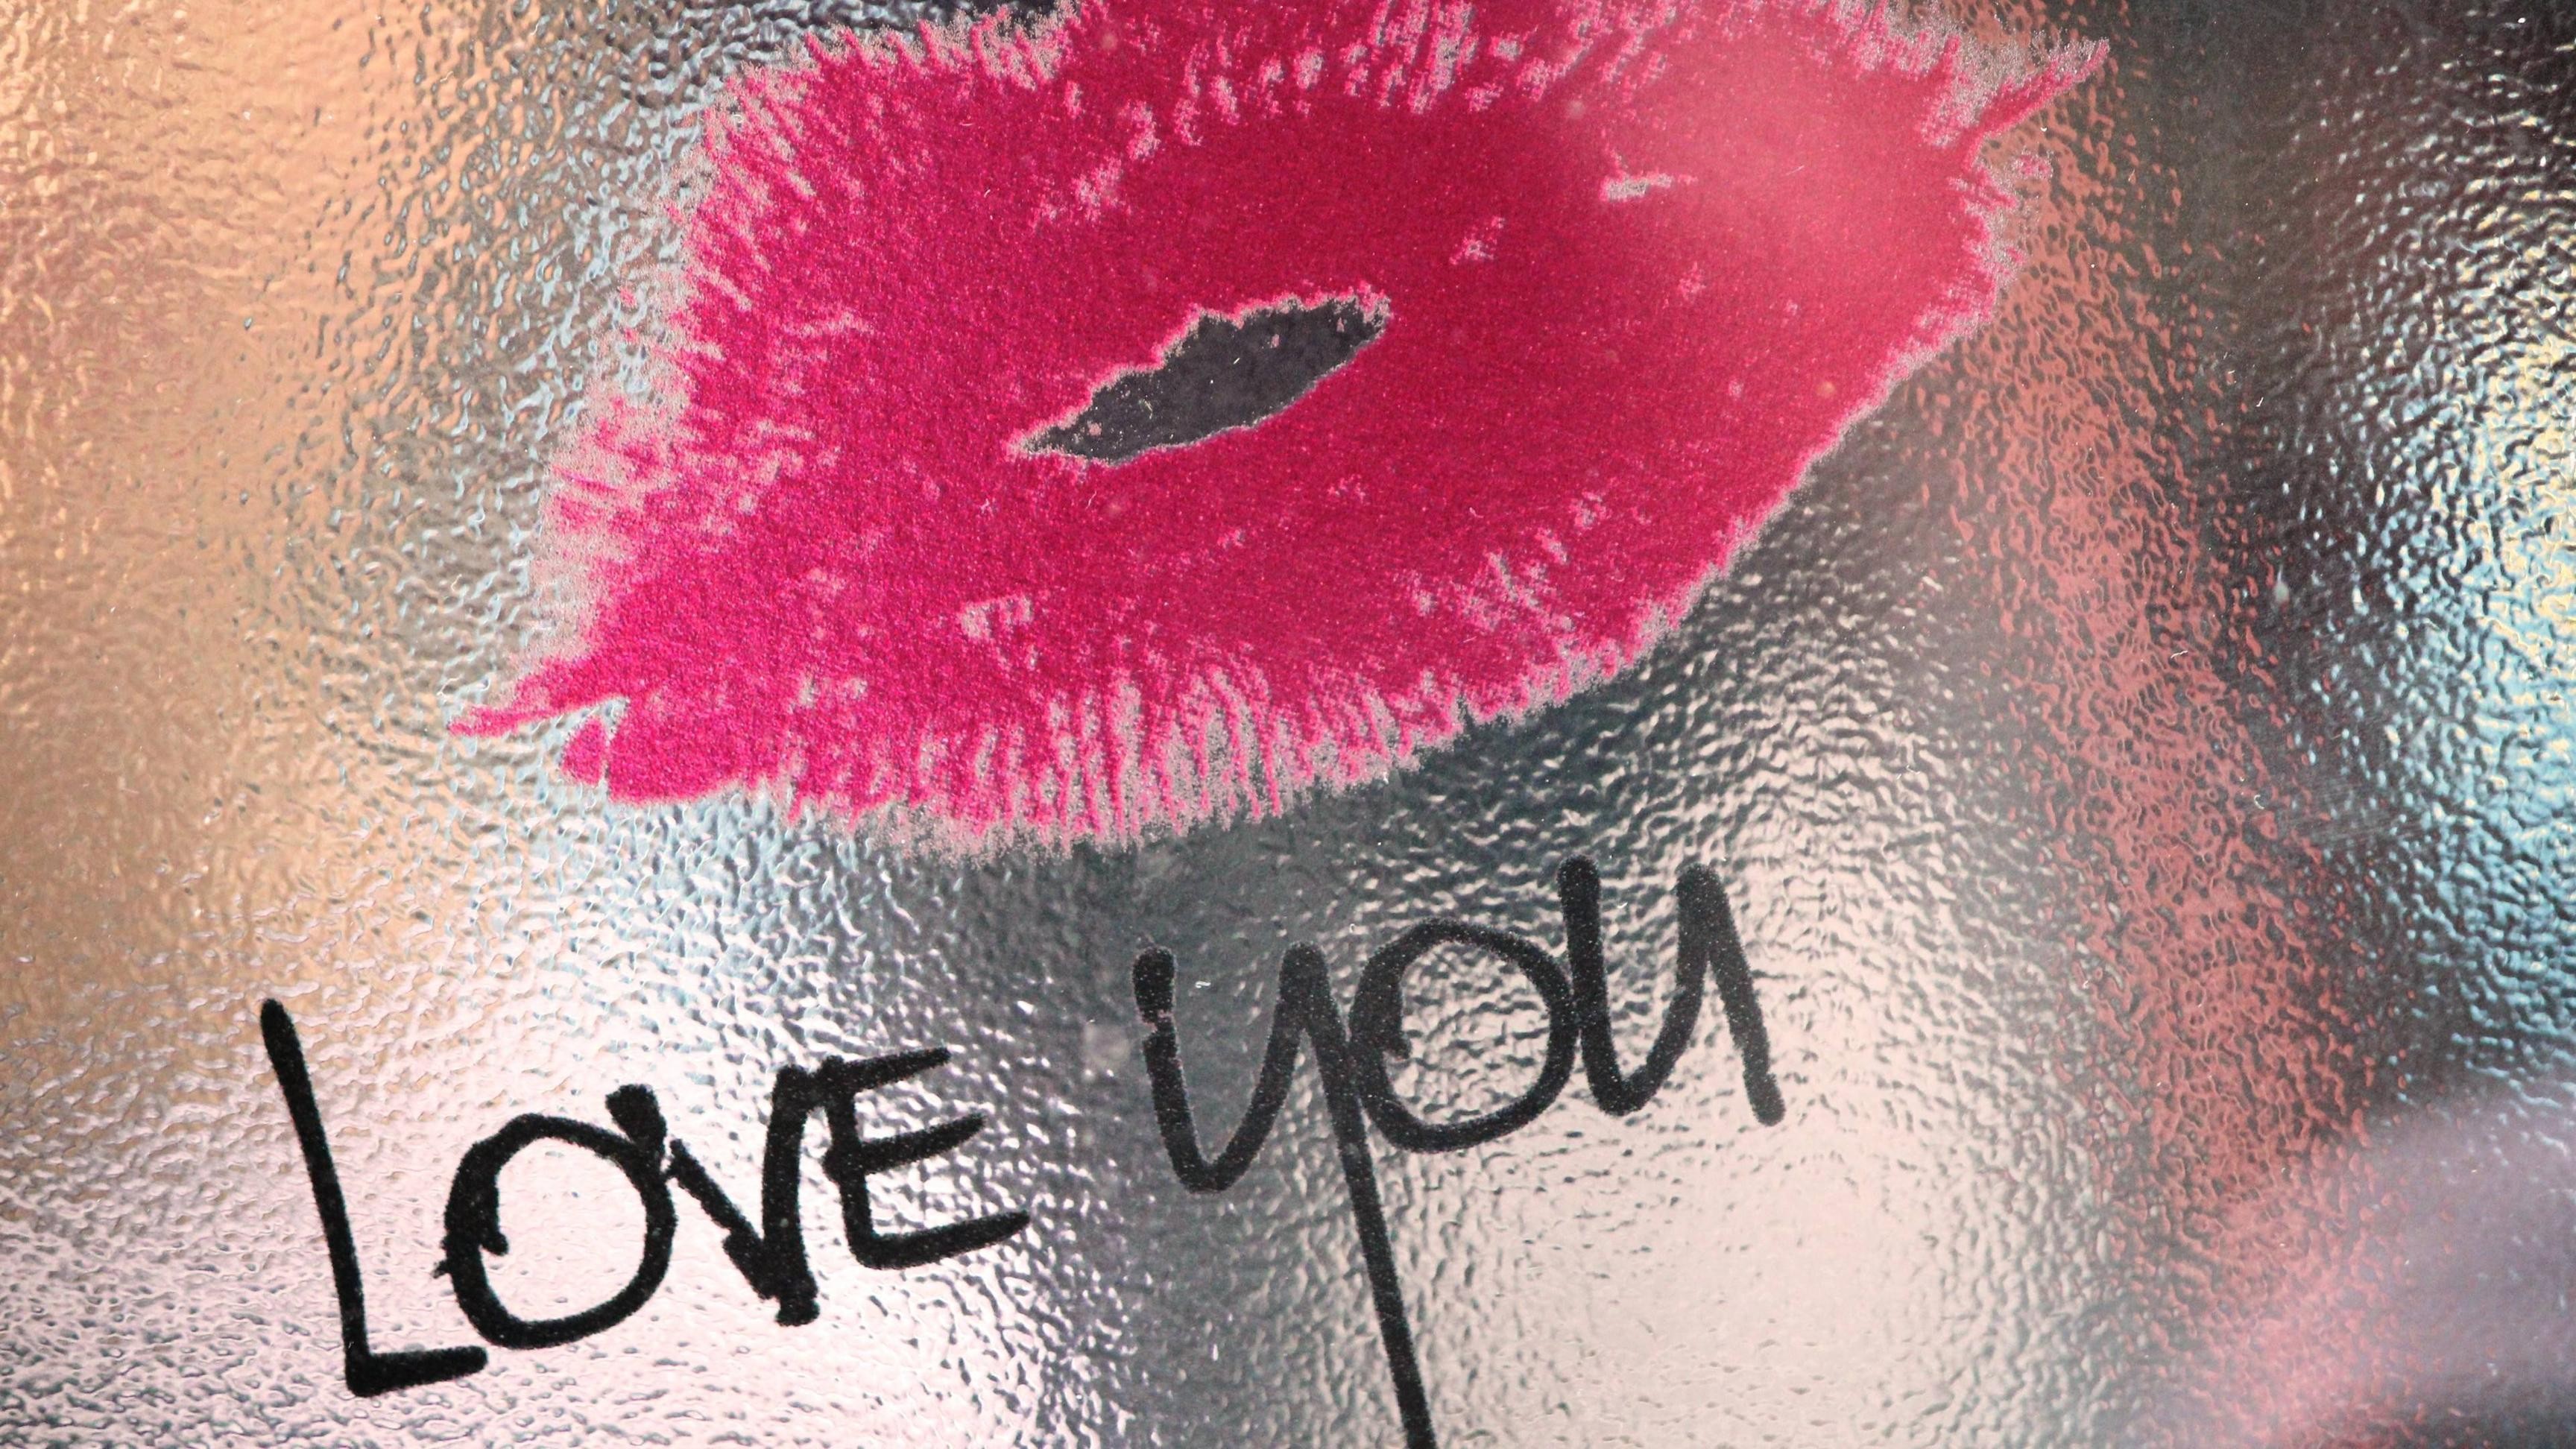 Kiss wallpaper ·① Download free beautiful full HD ...